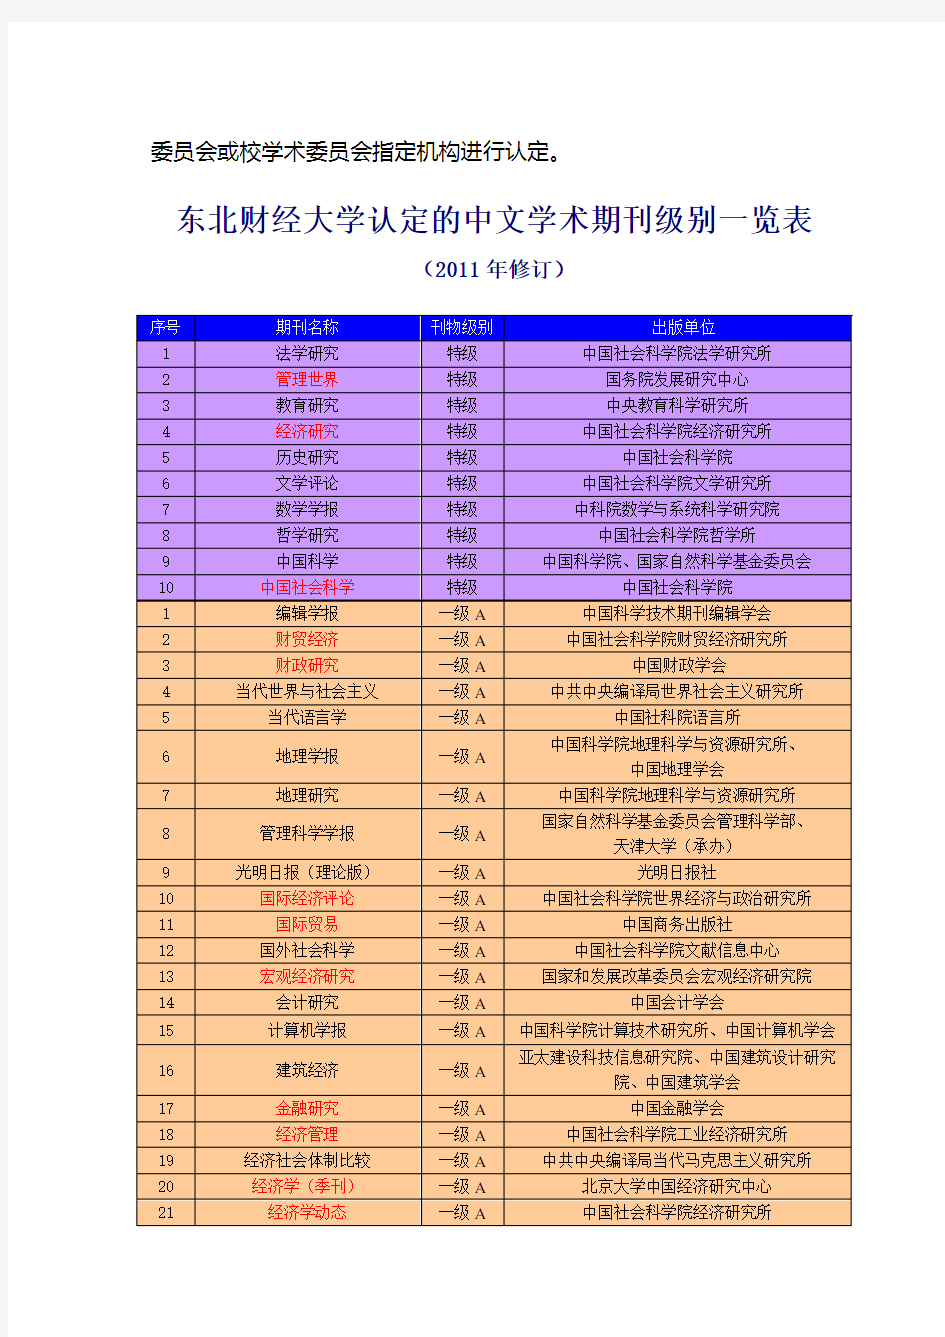 东北财经大学认定的中文学术期刊级别一览表